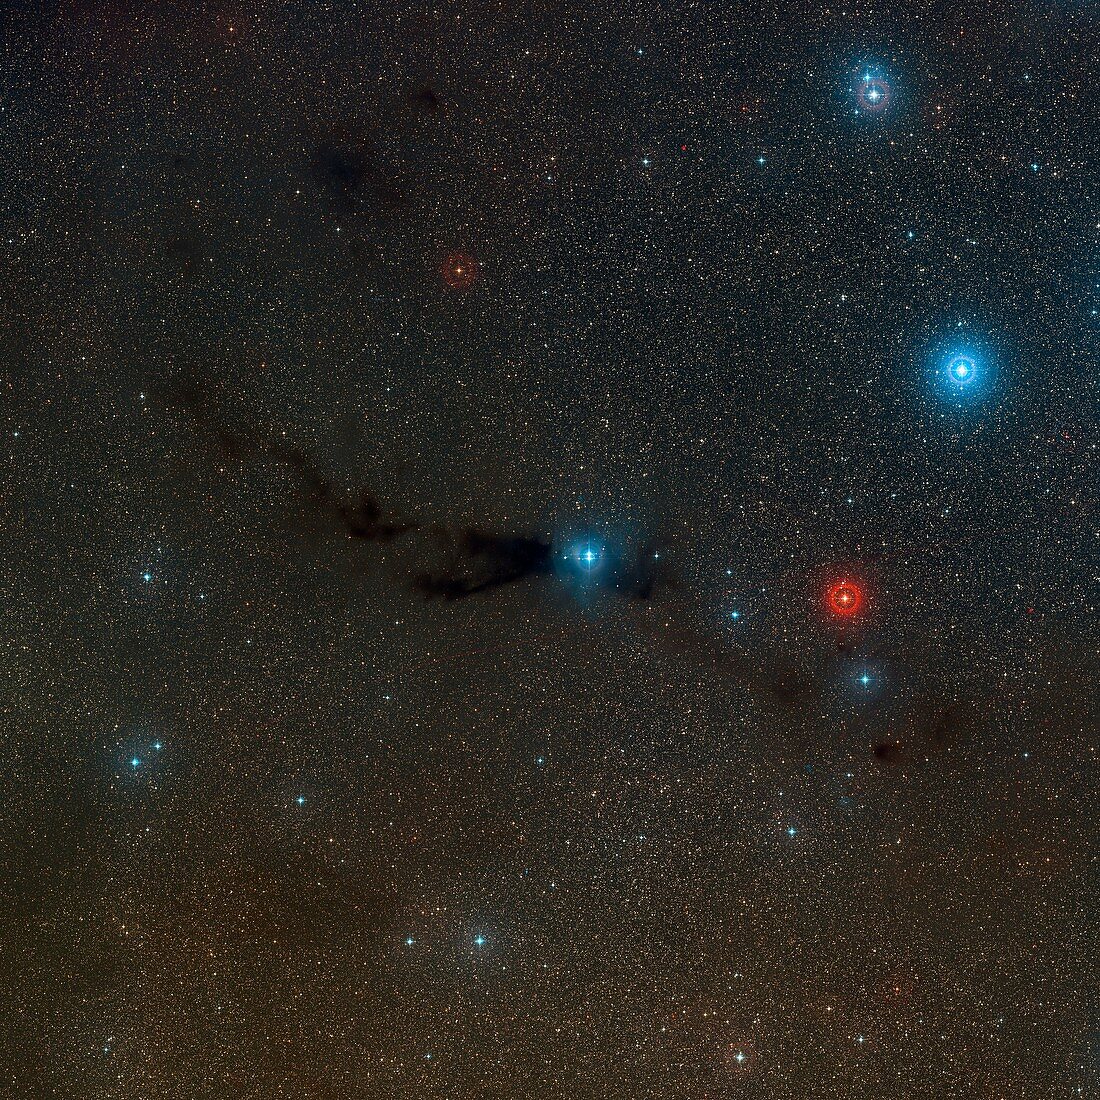 Dark Nebula Lupus 3 in Scorpius